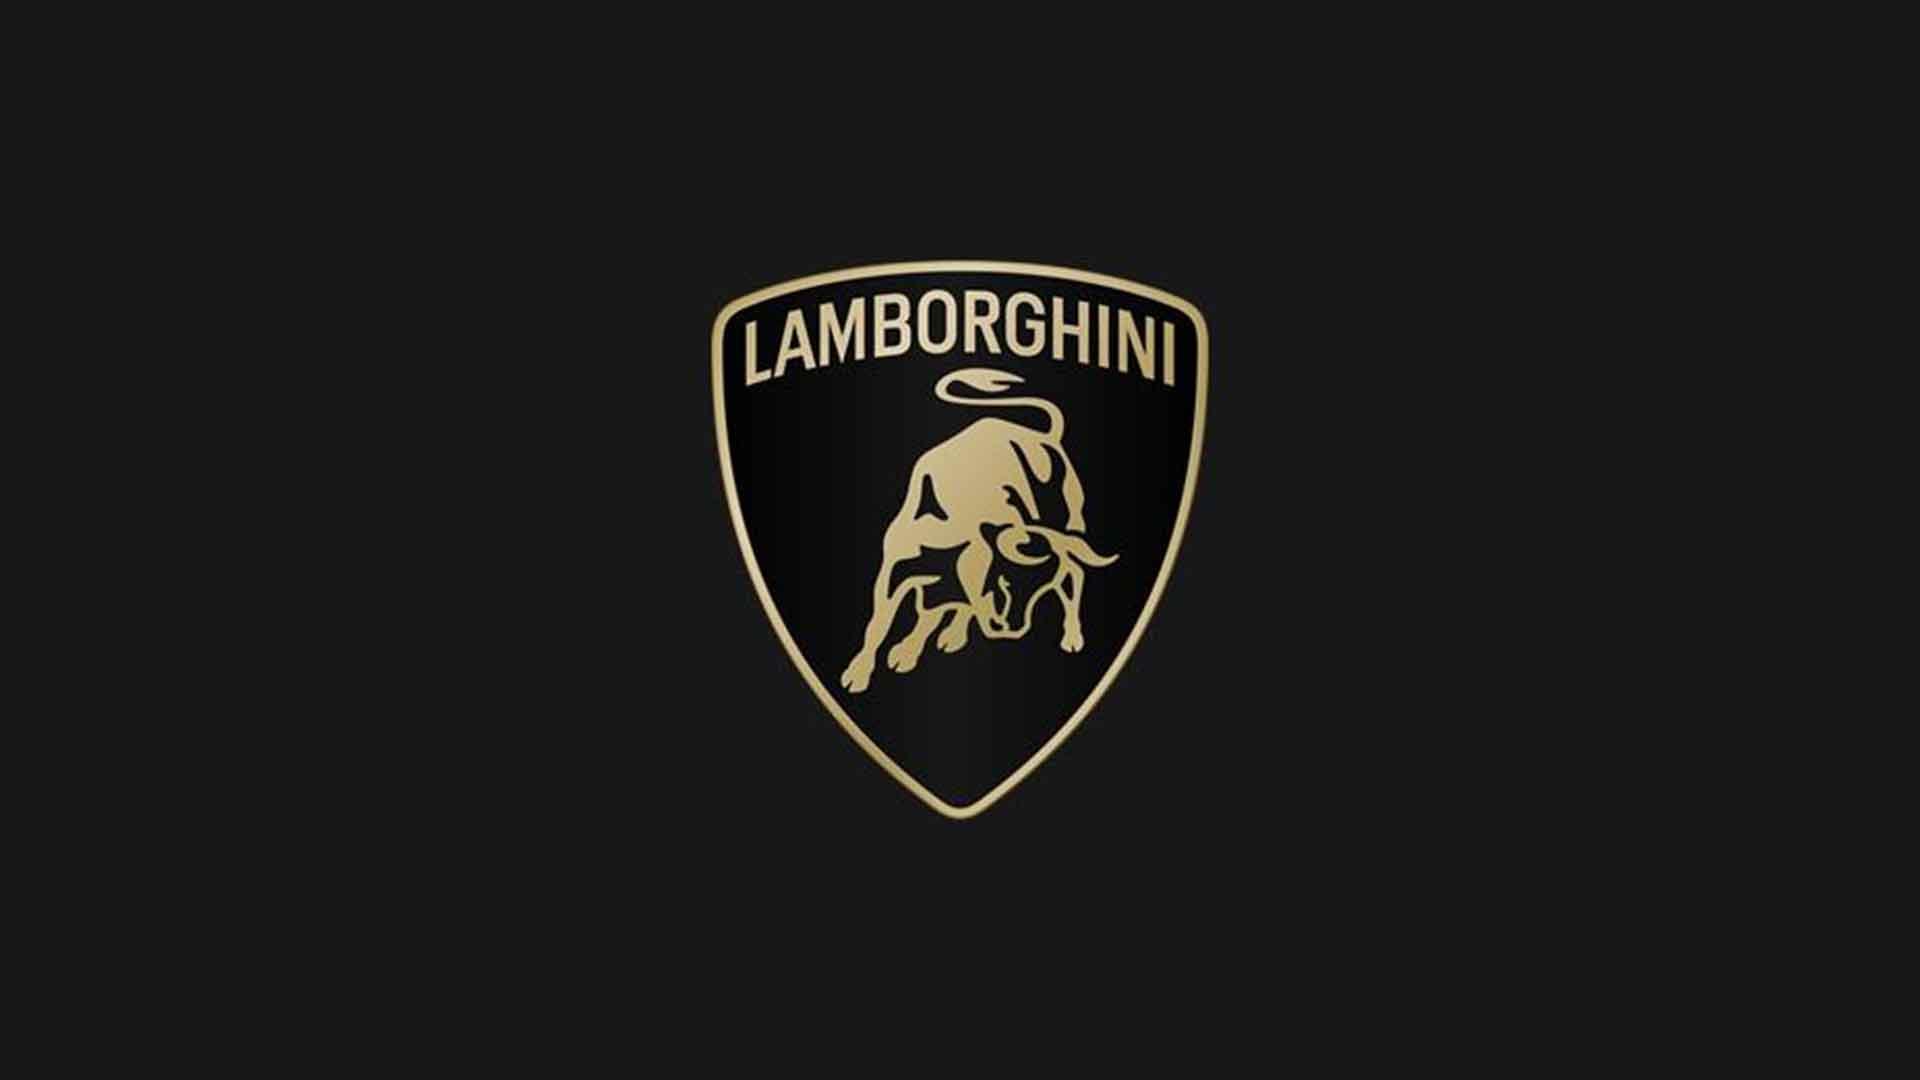 The new Lamborghini logo